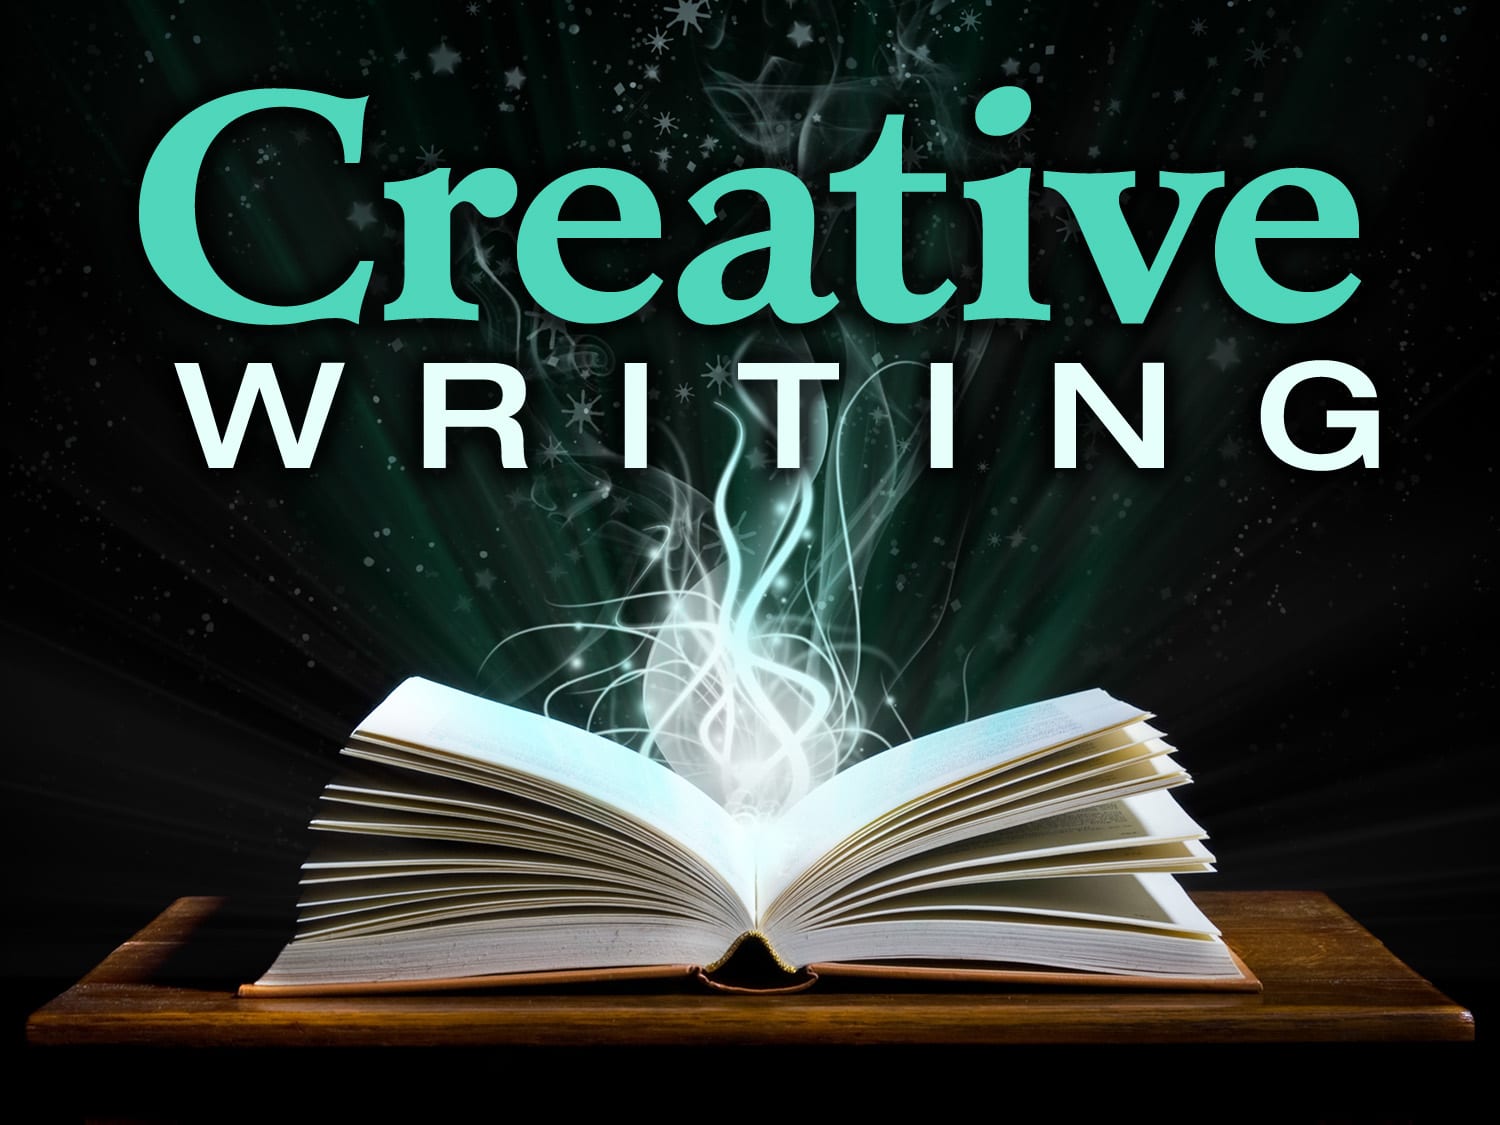 Creative writing.com dissertation paper